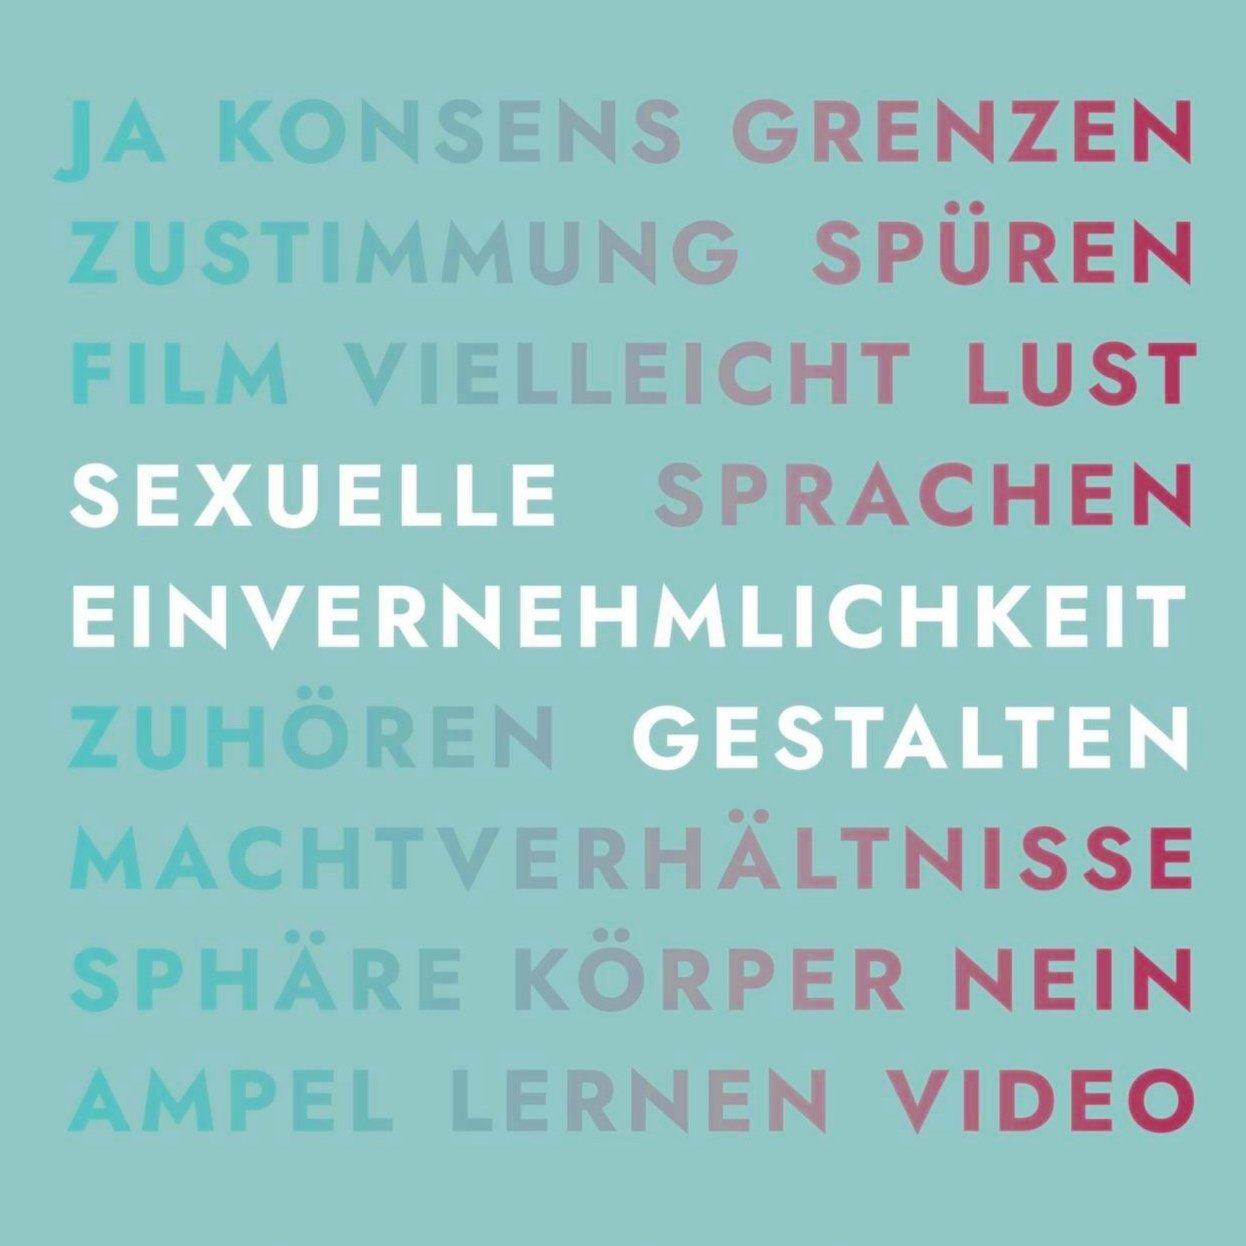 Beata's review of the wonderful handbook "Sexuelle Einvernehmlichkeit gestalten" was published in the magazine Kult_Online